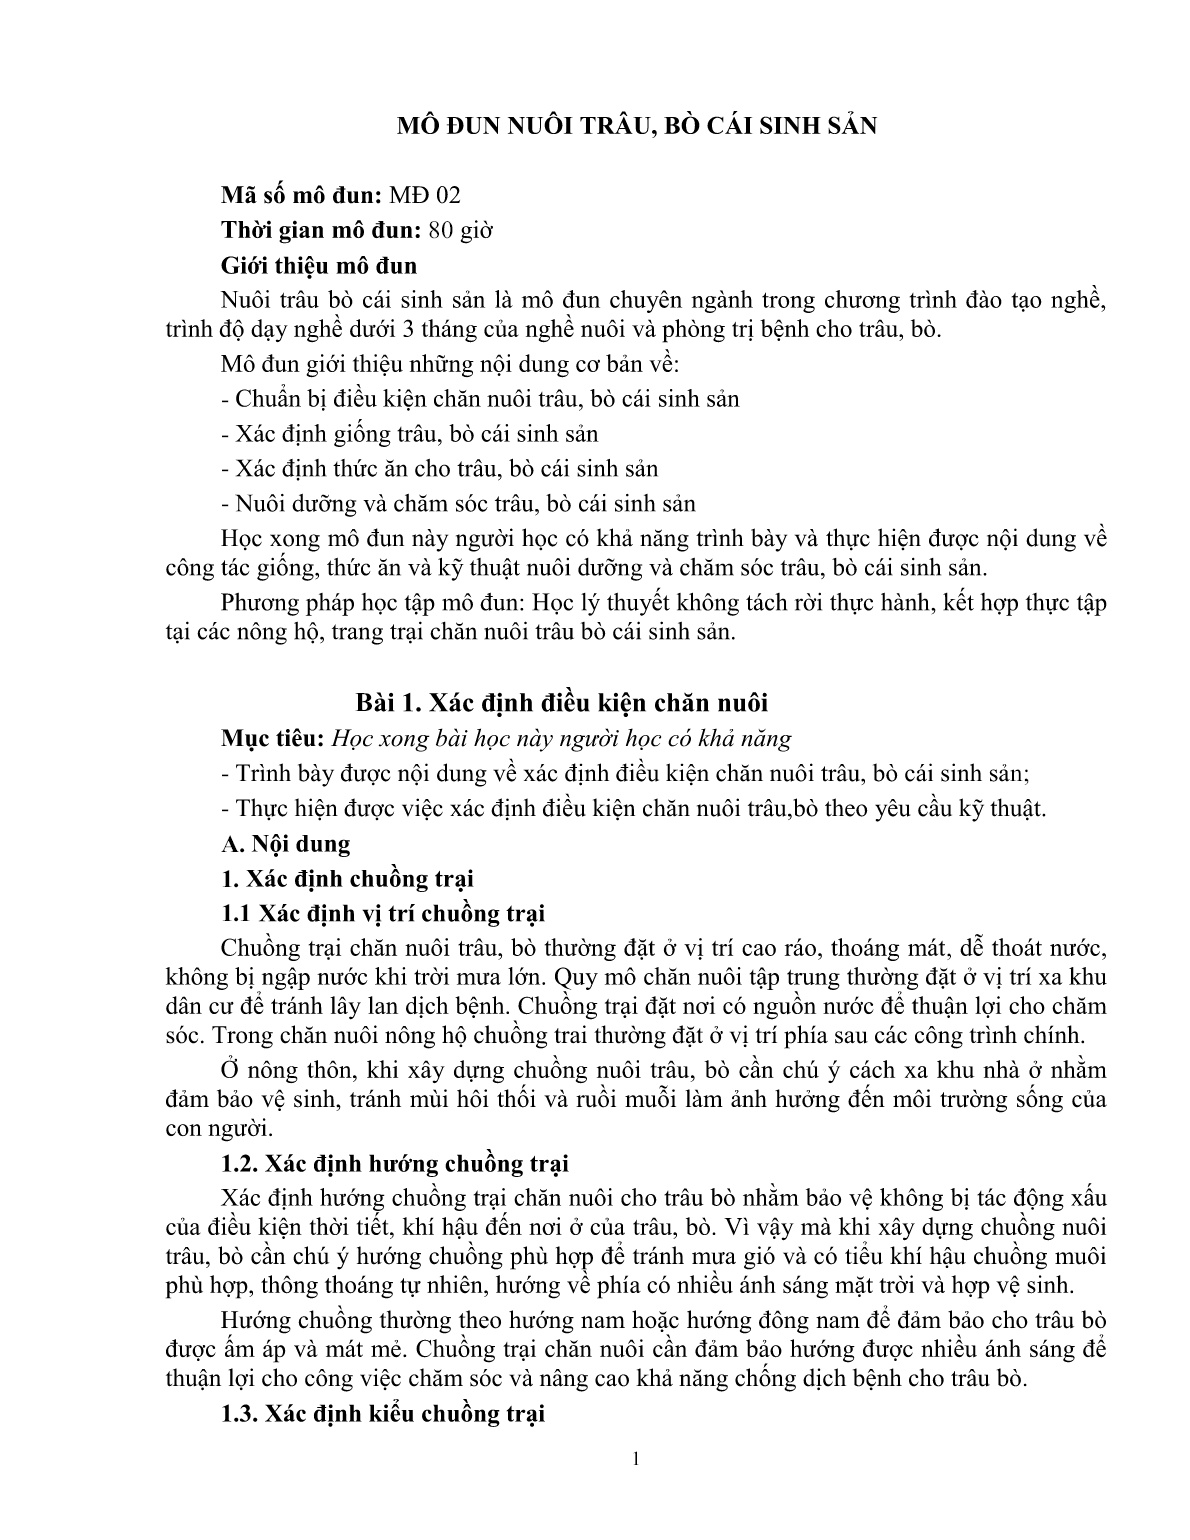 Giáo trình mô đun Nuôi trâu, bò cái sinh sản (Trình độ: Đào tạo dưới 3 tháng) trang 3